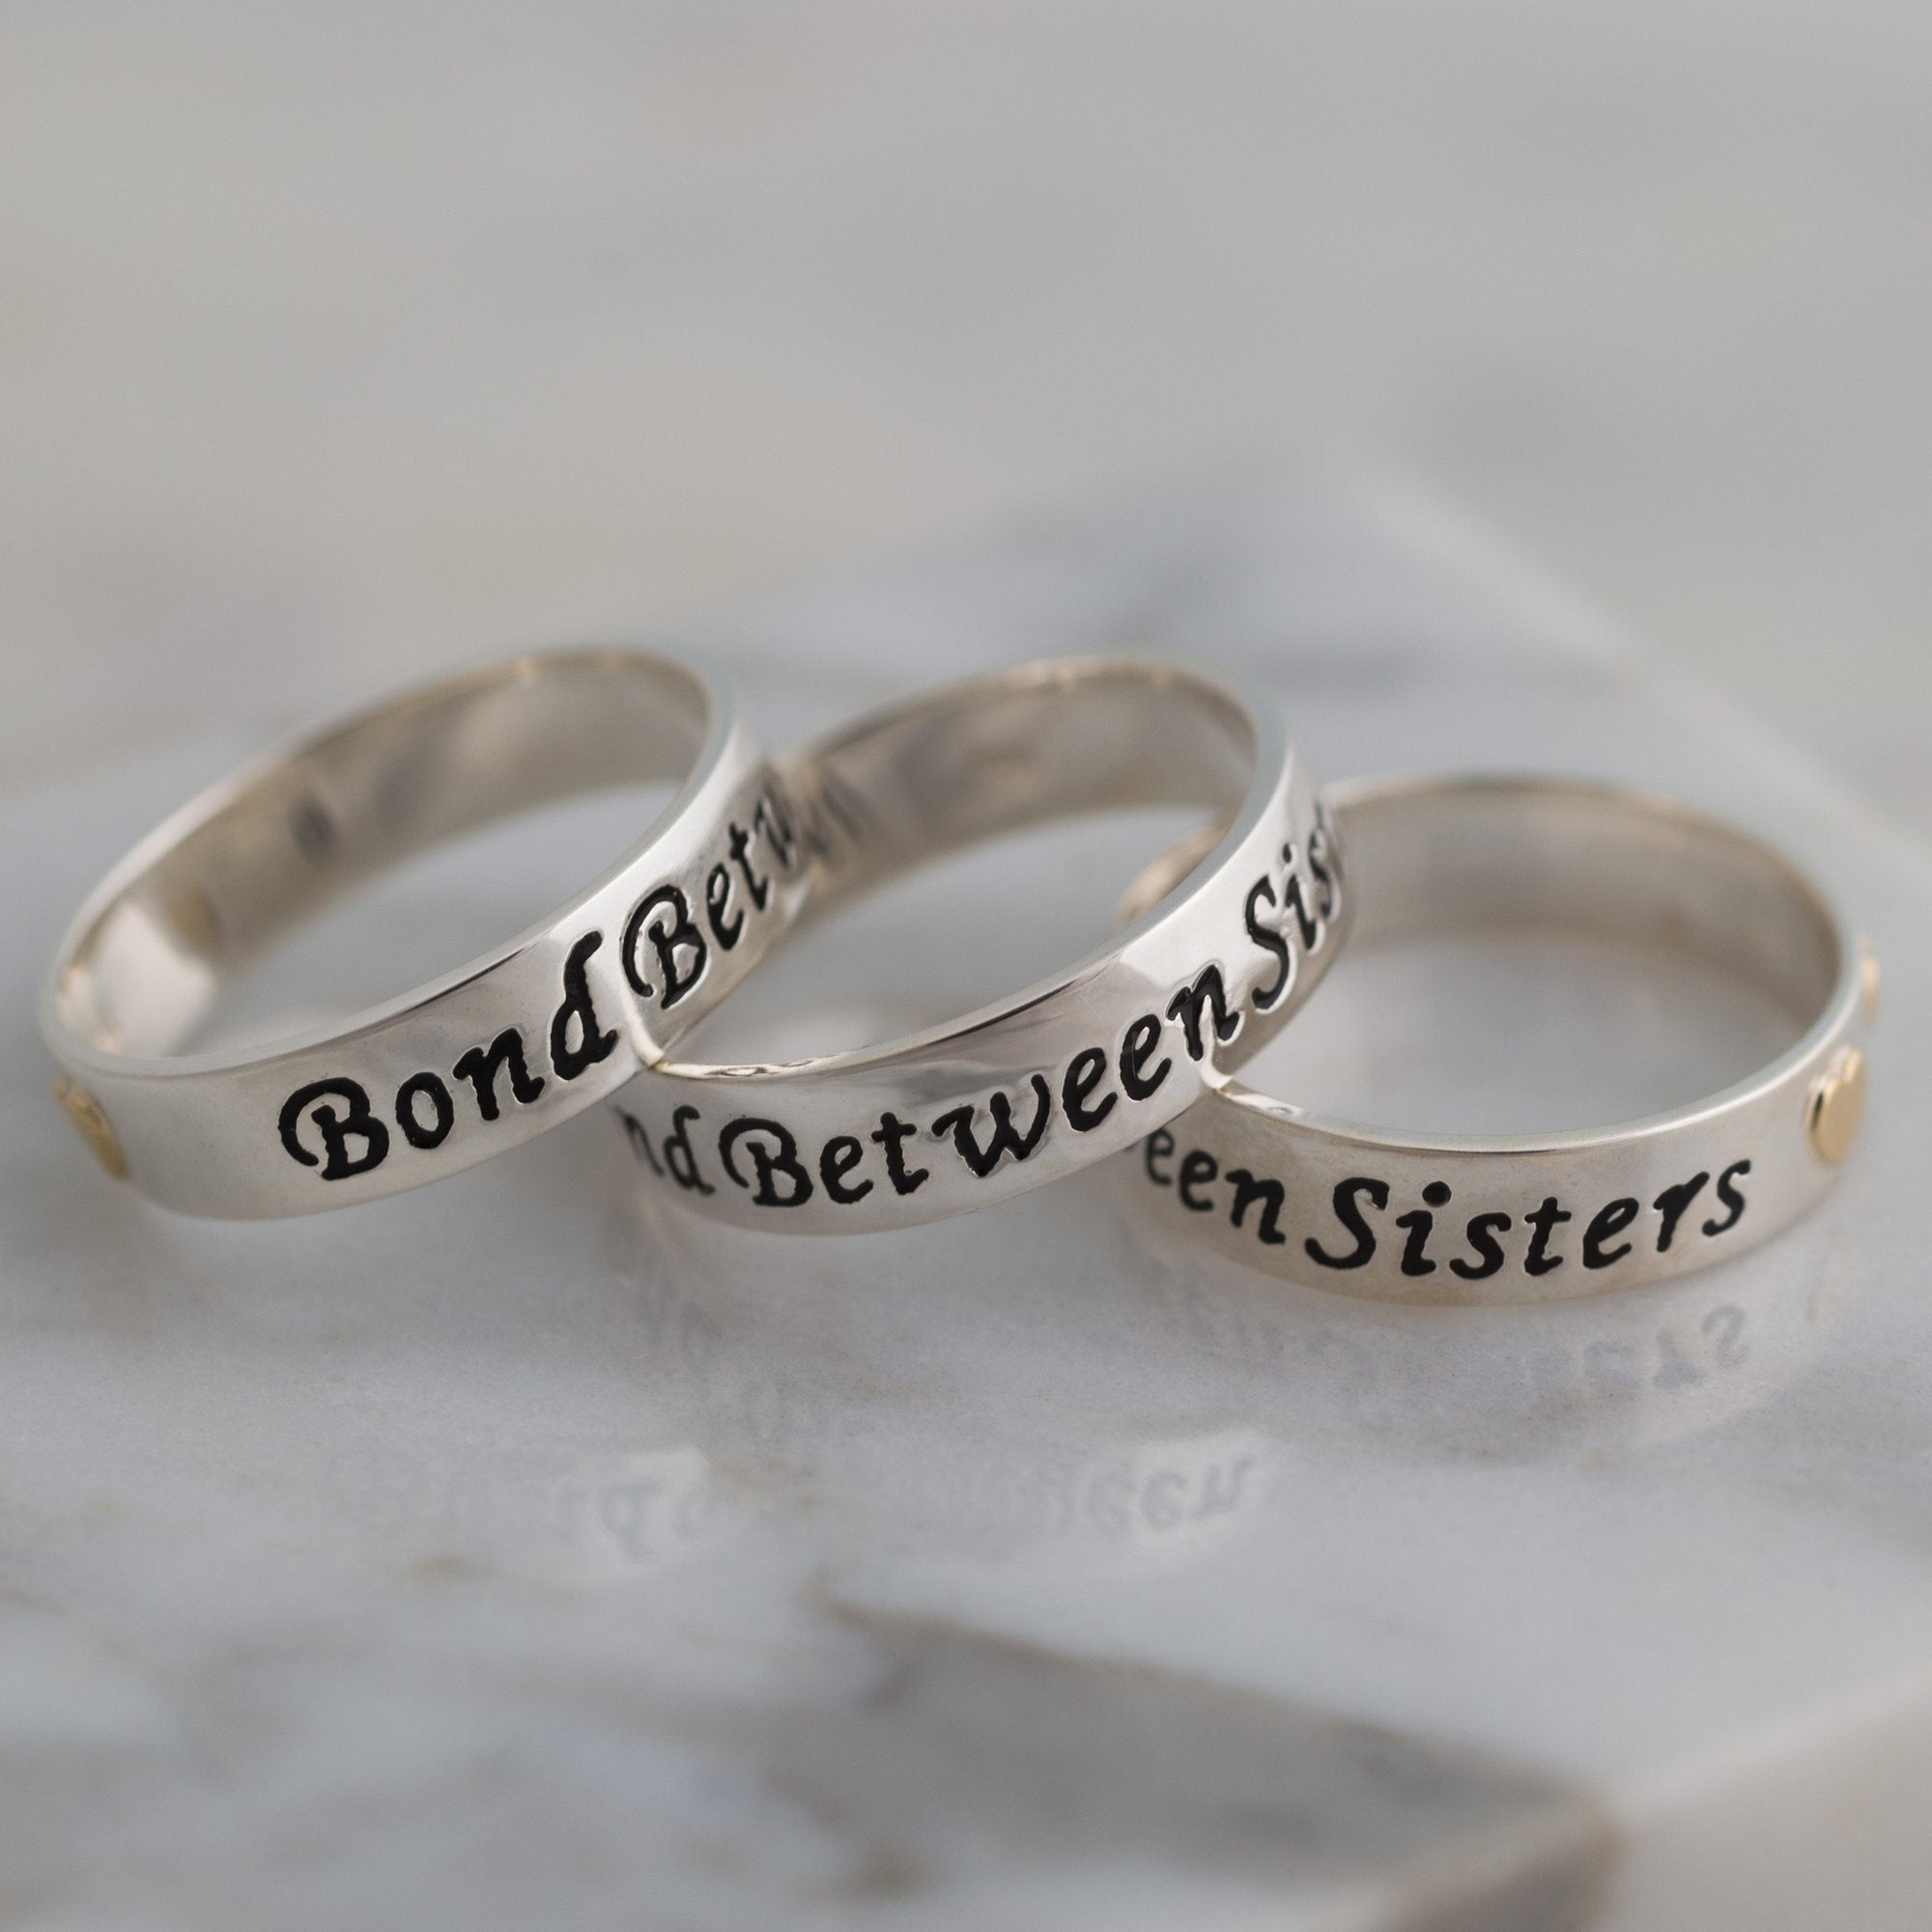 Bond Between Sisters Sterling Ring - 4 Sisters - 6